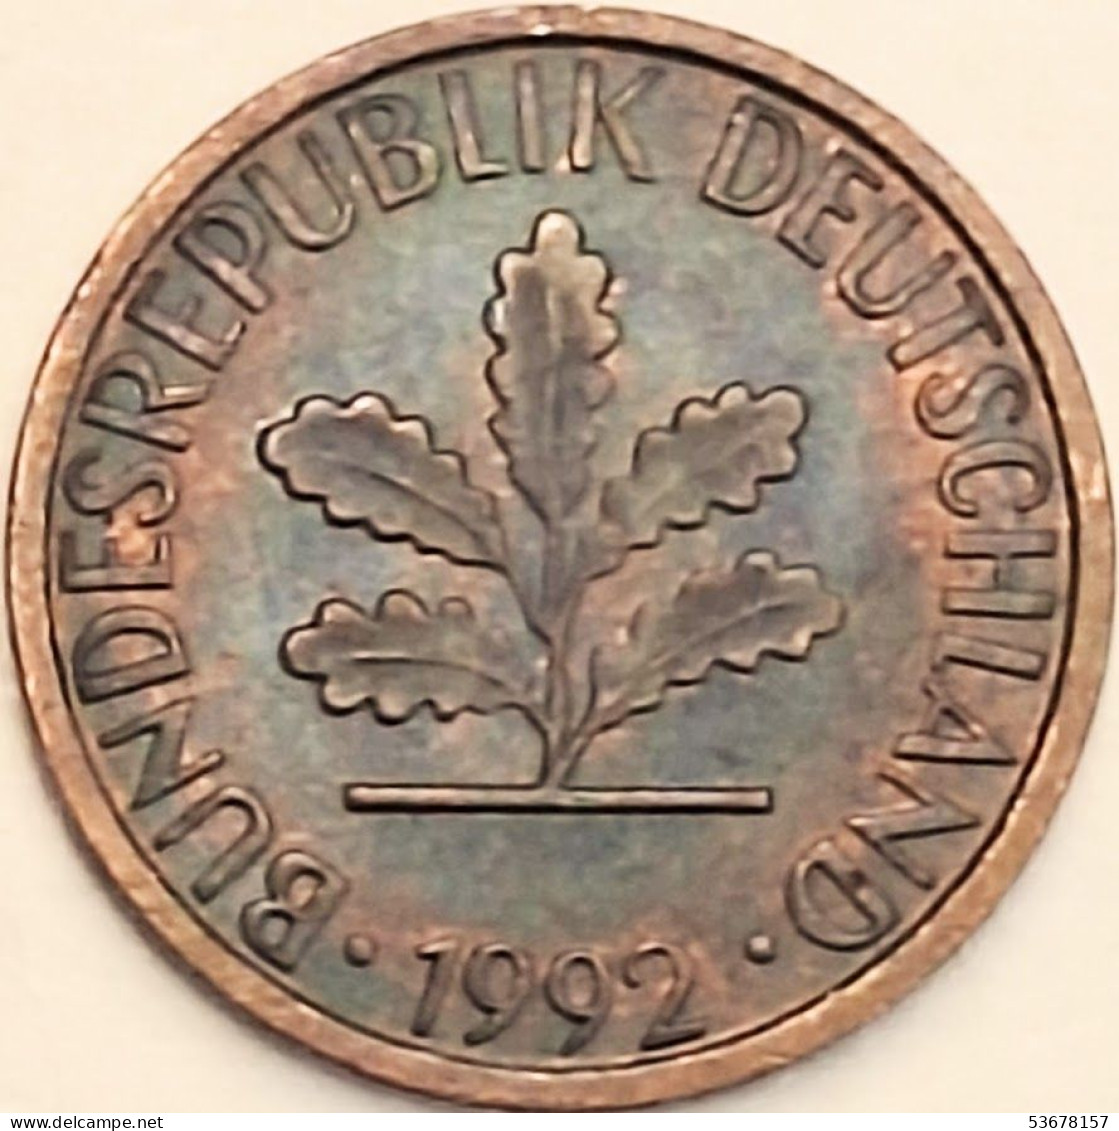 Germany Federal Republic - Pfennig 1992 F, KM# 105 (#4508) - 1 Pfennig